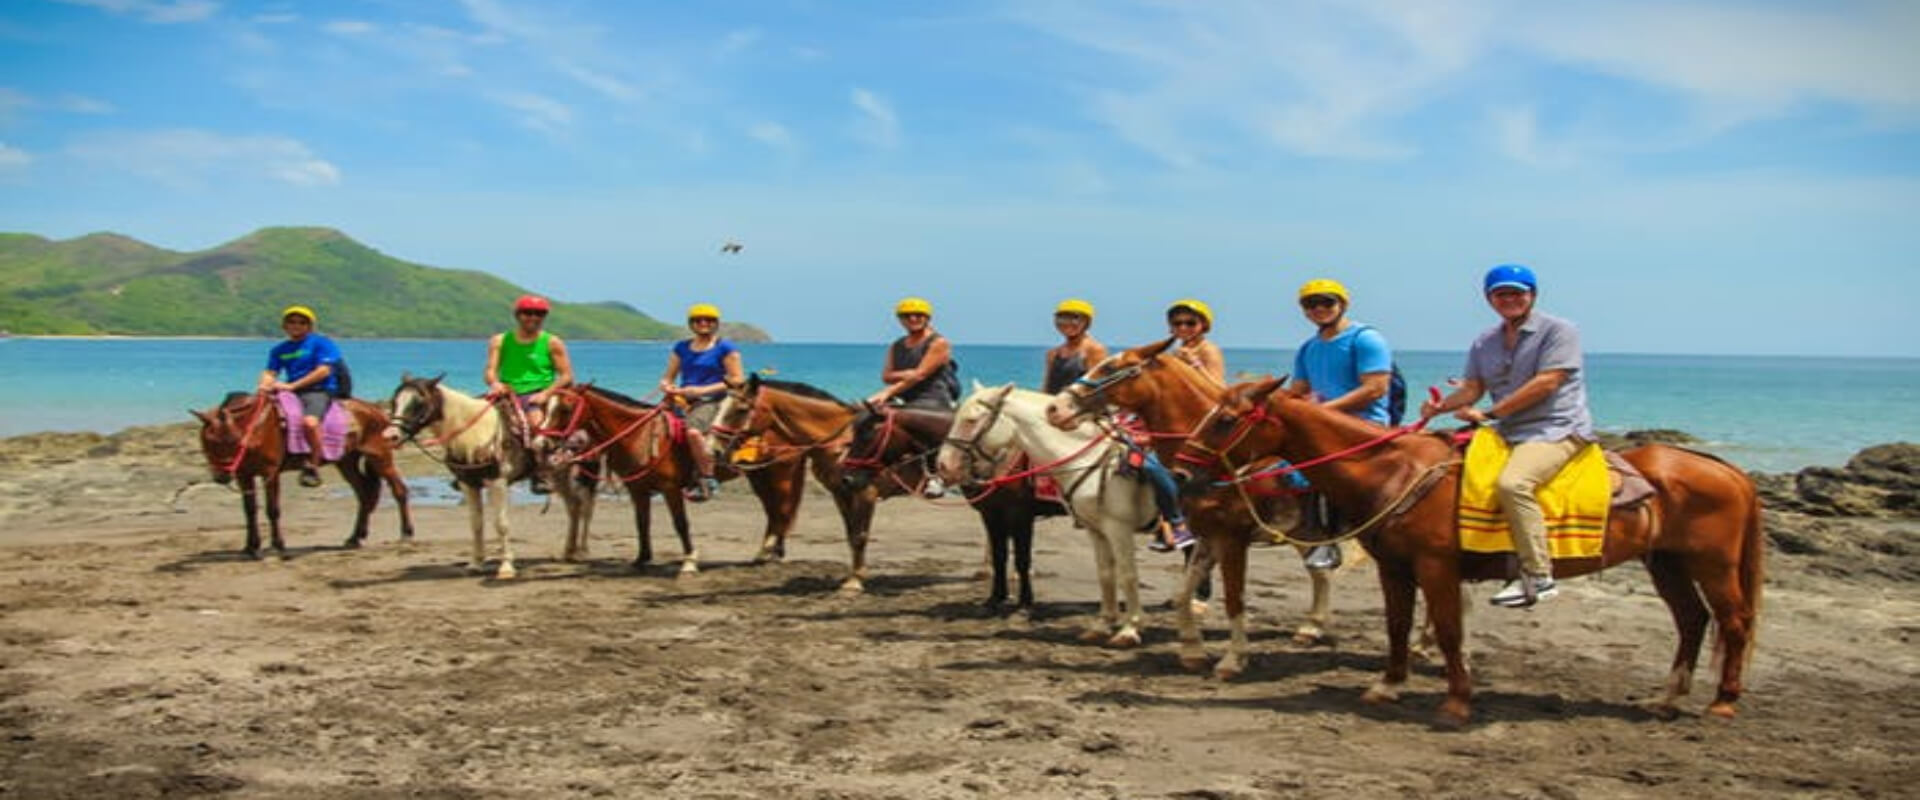 Diamante's Animal Sanctuary Horseback tour | Costa Rica Jade Tours